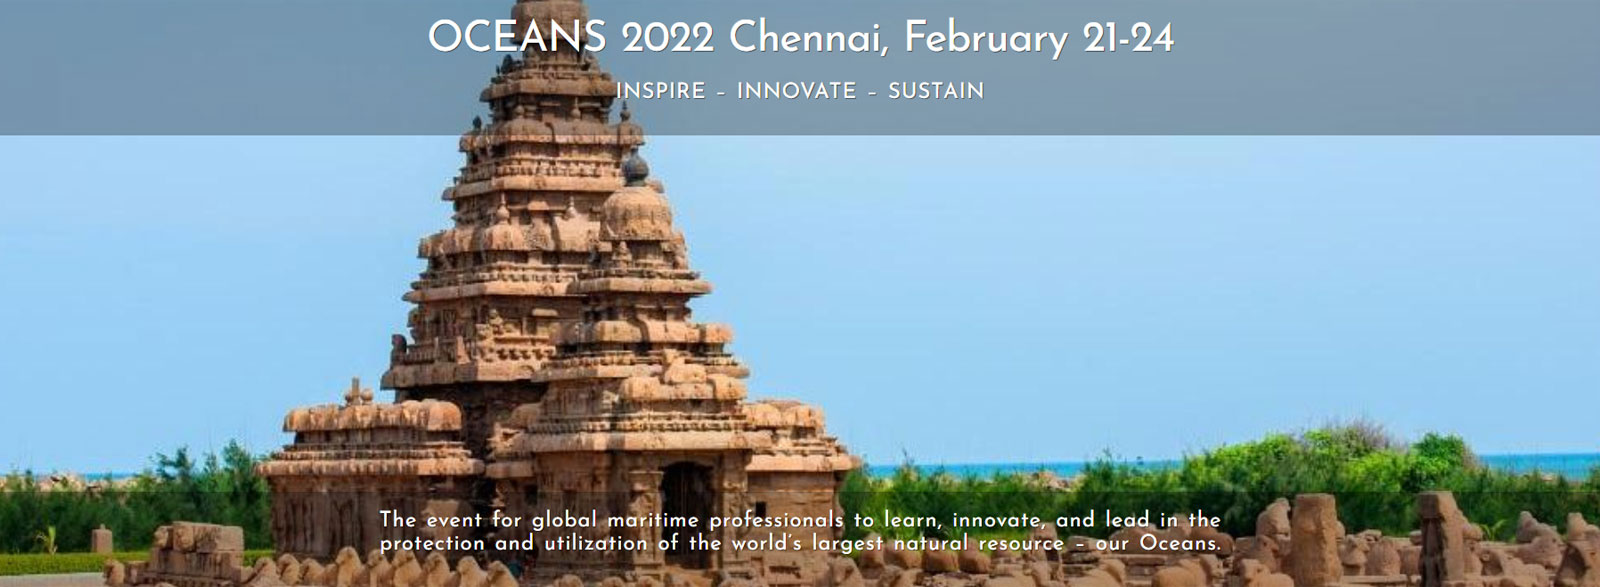 OCEANS 2022 Chennai